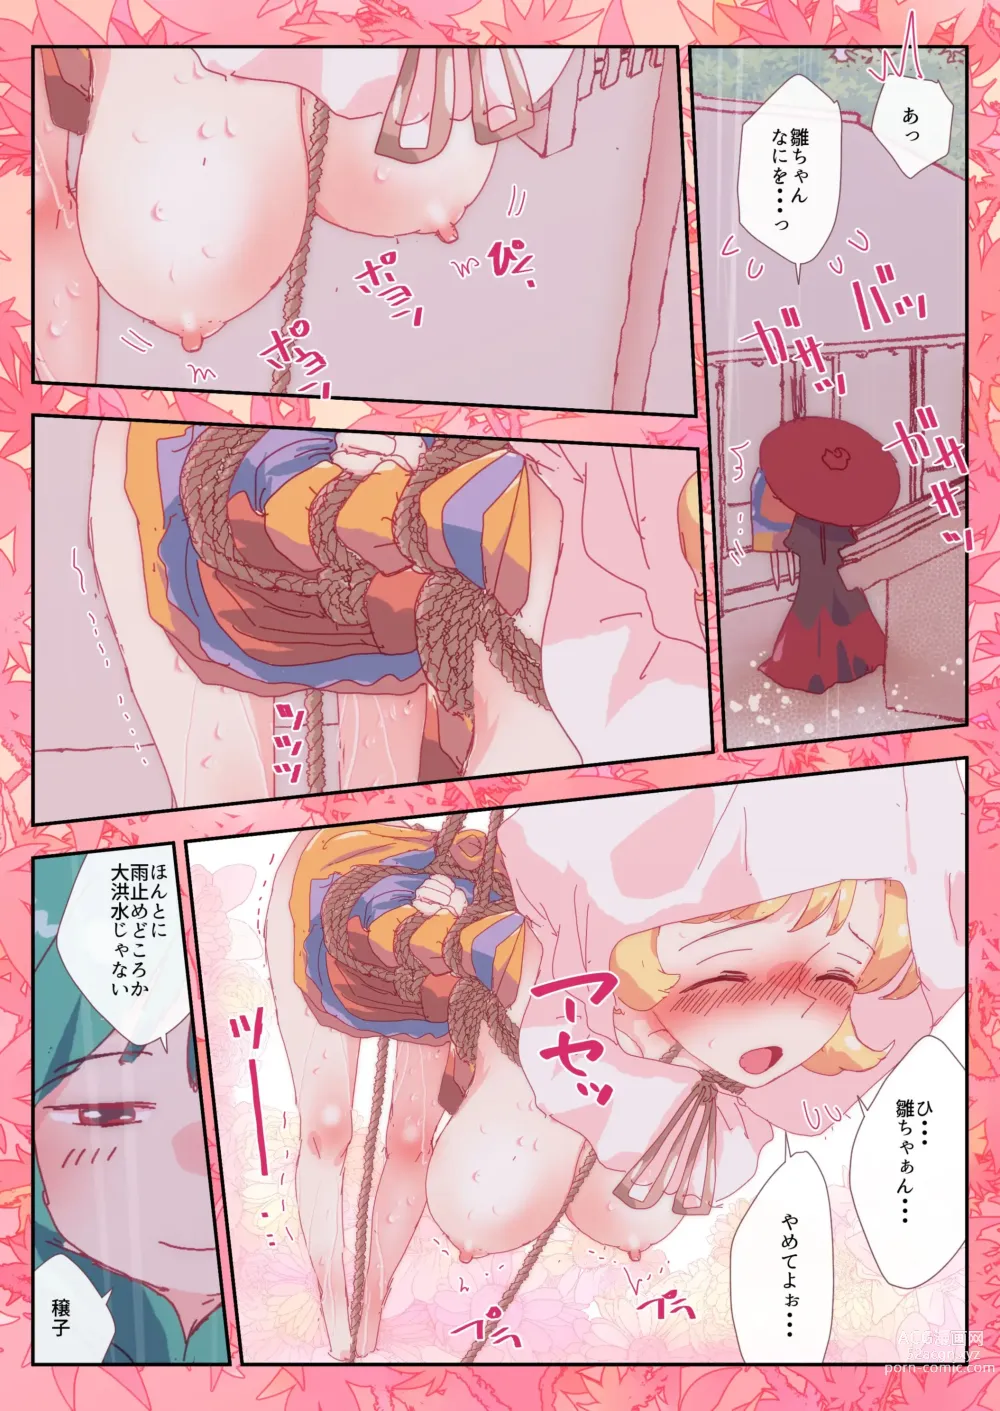 Page 3 of doujinshi Teruteru Minoriko.